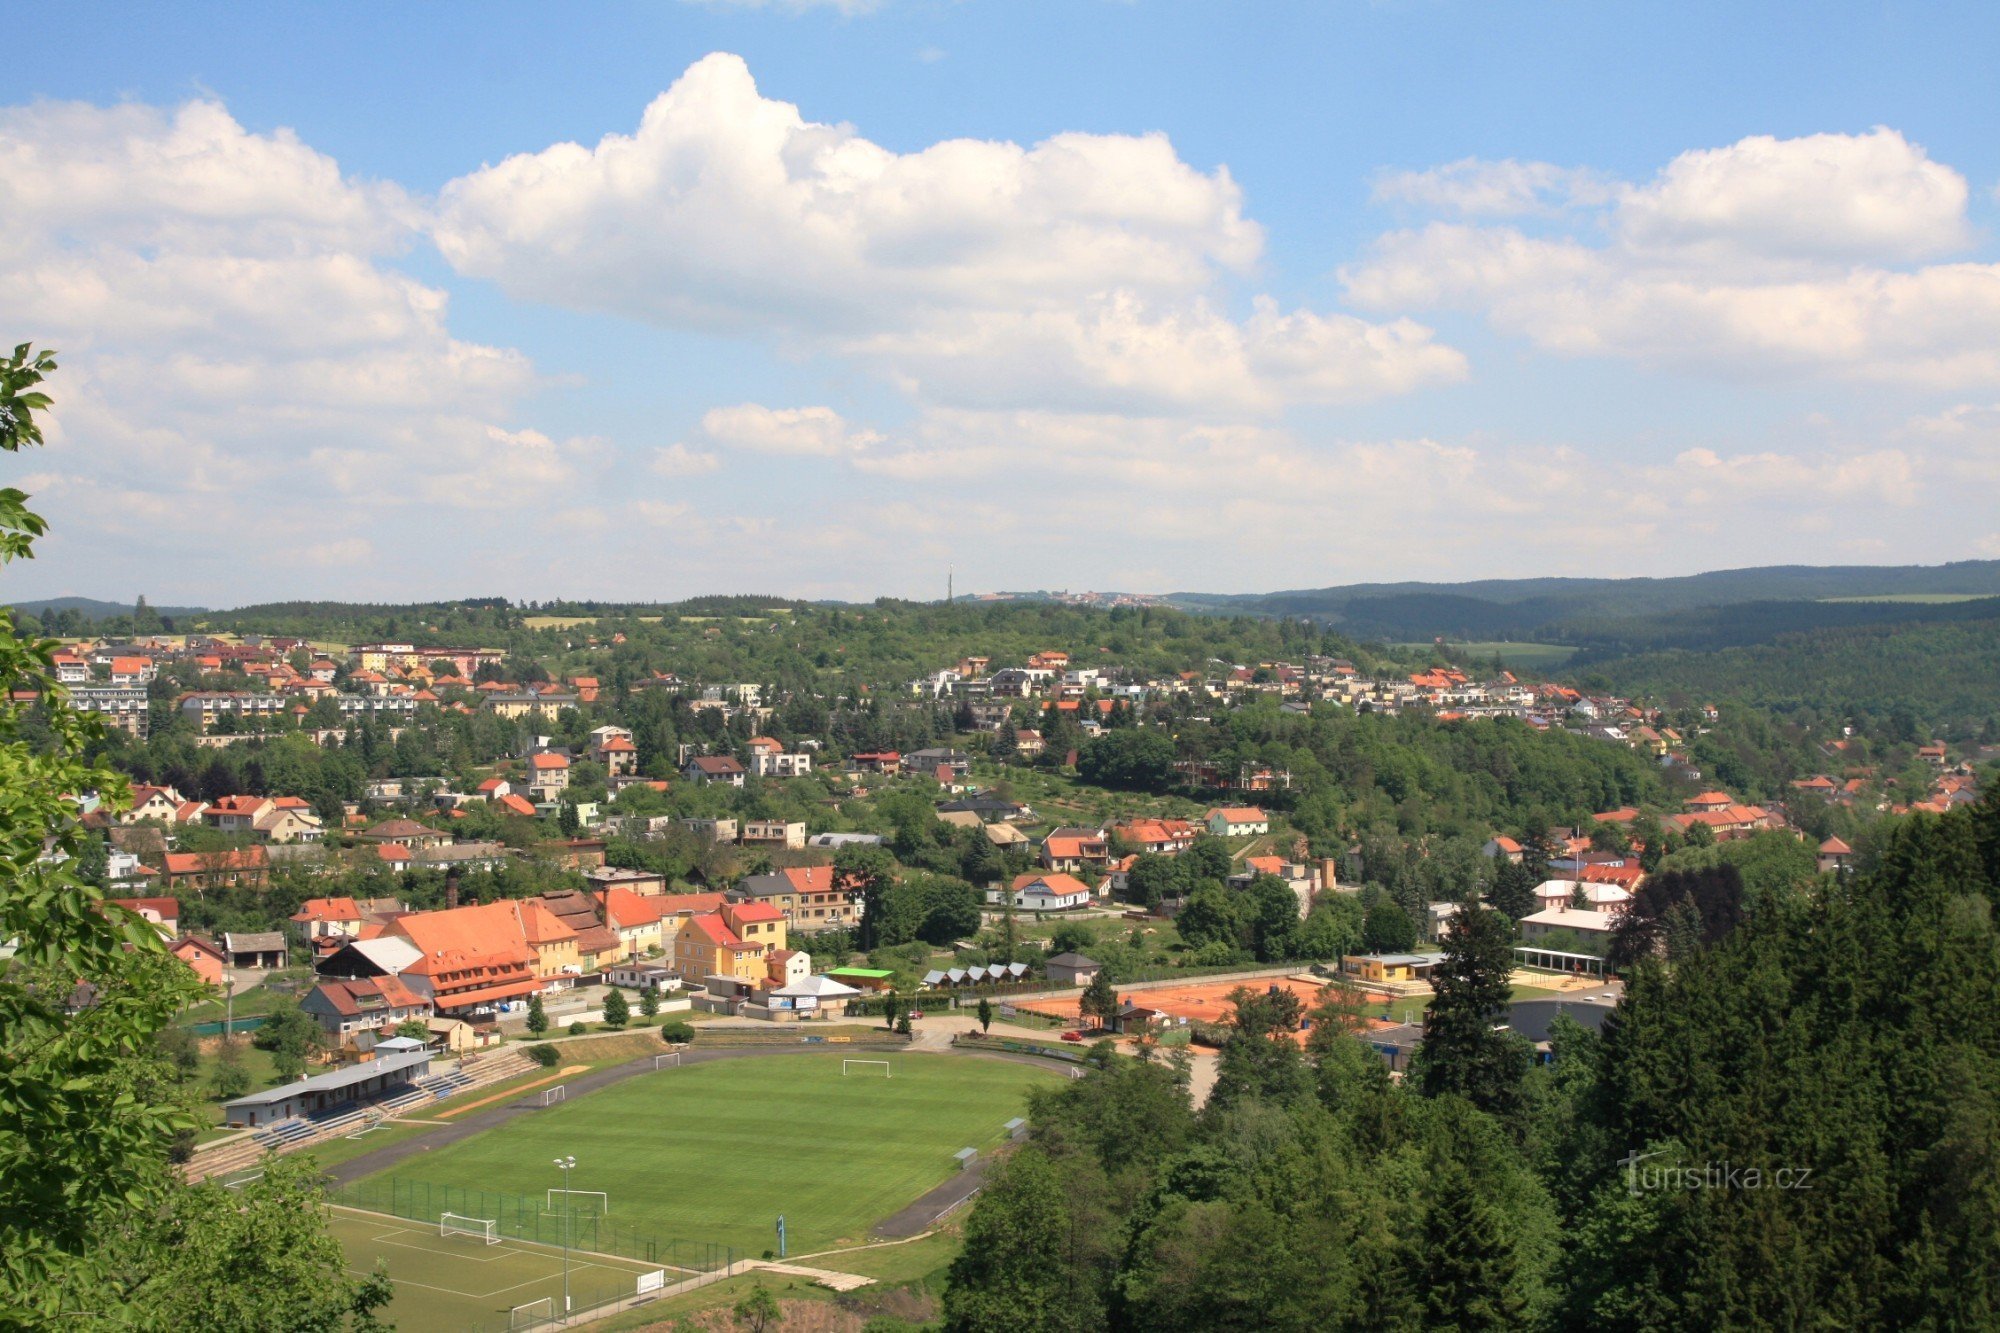 Vedere din foișor din partea de est a Boskovice și partea de sus a Drahanská vrchovina